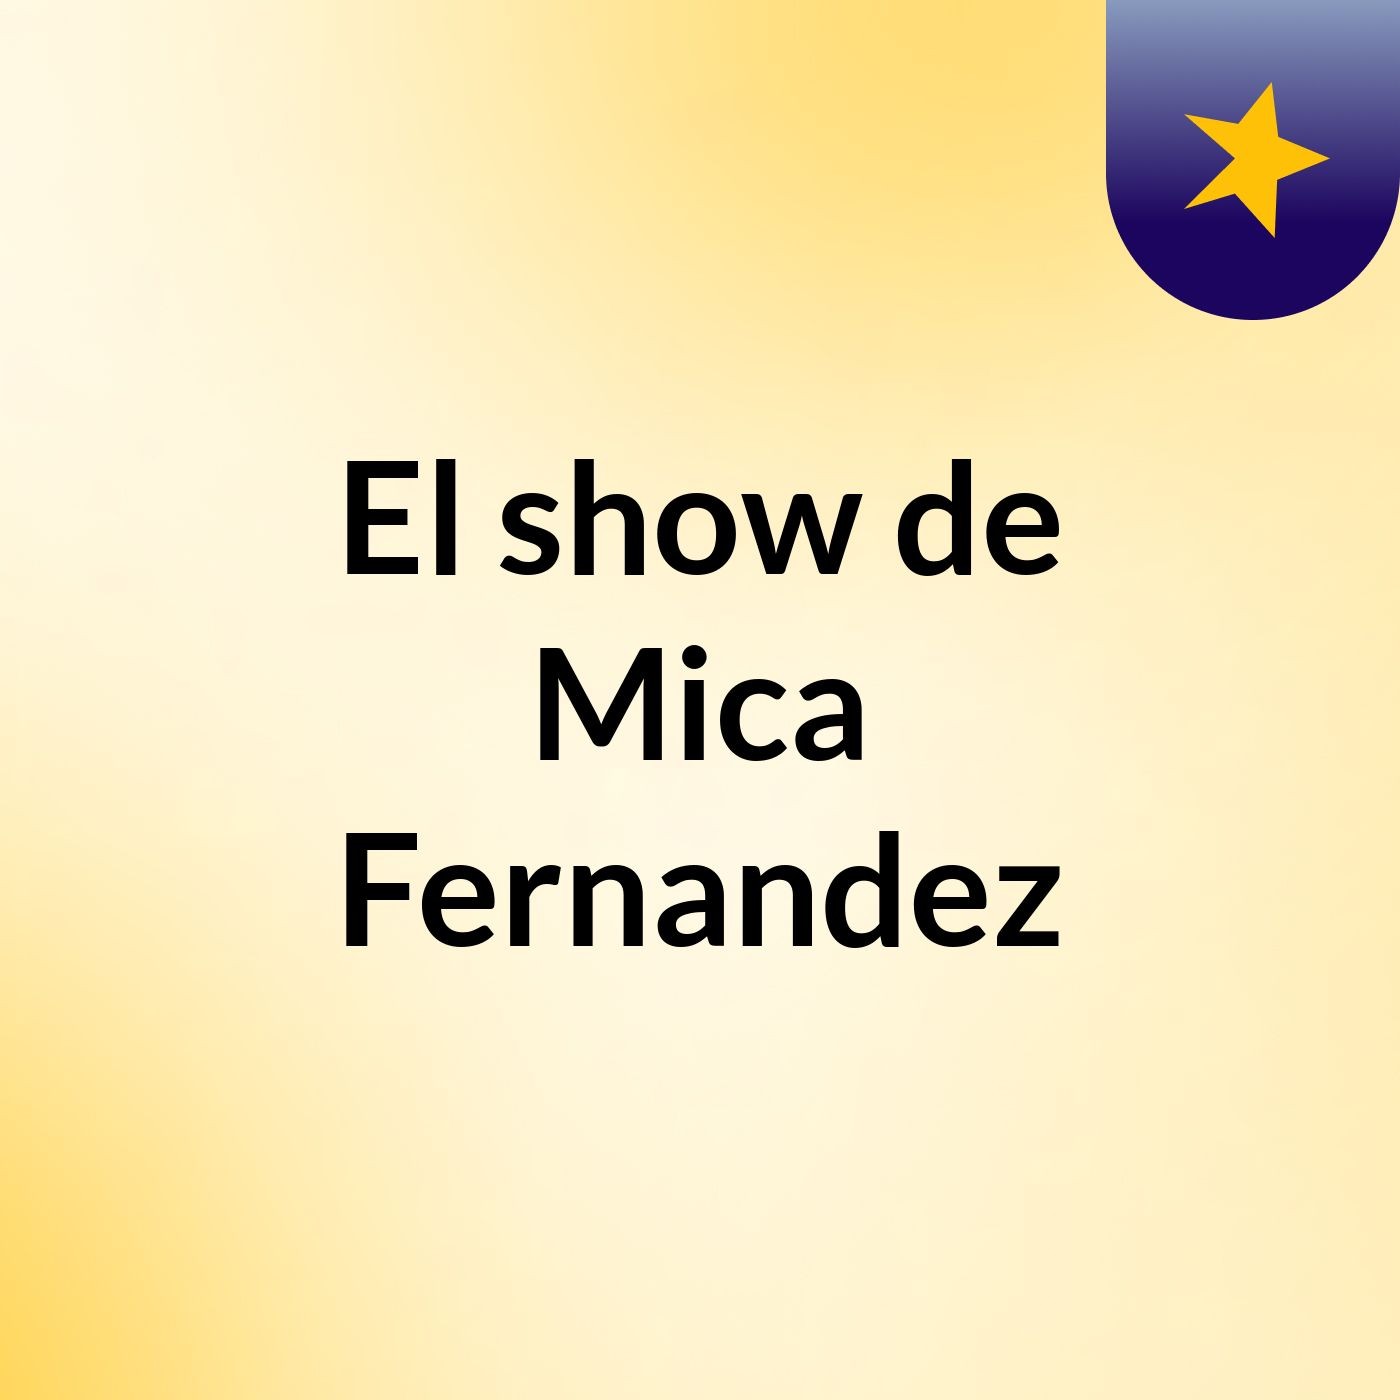 El show de Mica Fernandez